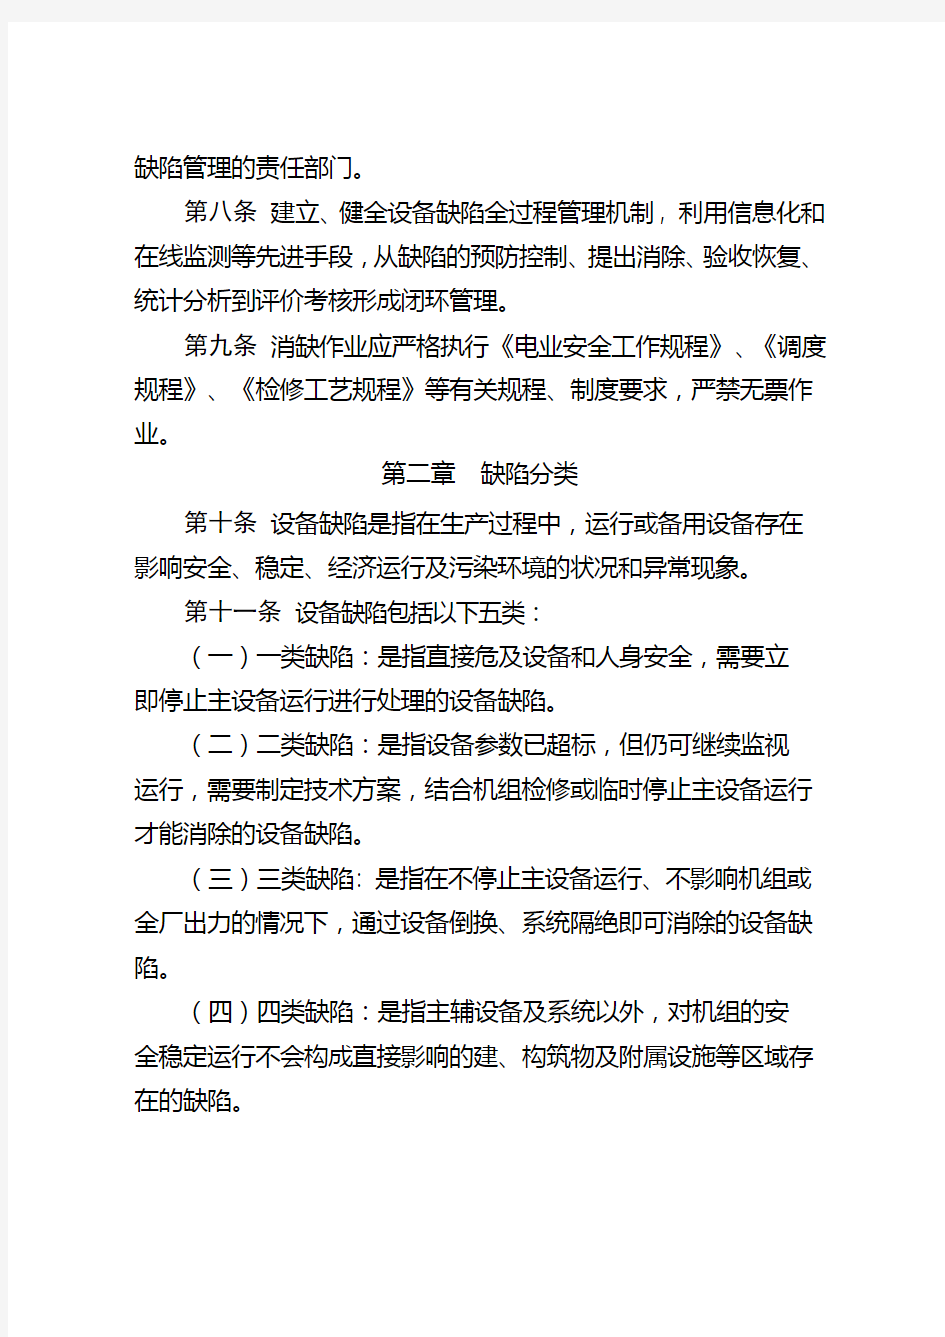 中国大唐集团公司发电企业设备缺陷管理办法试行